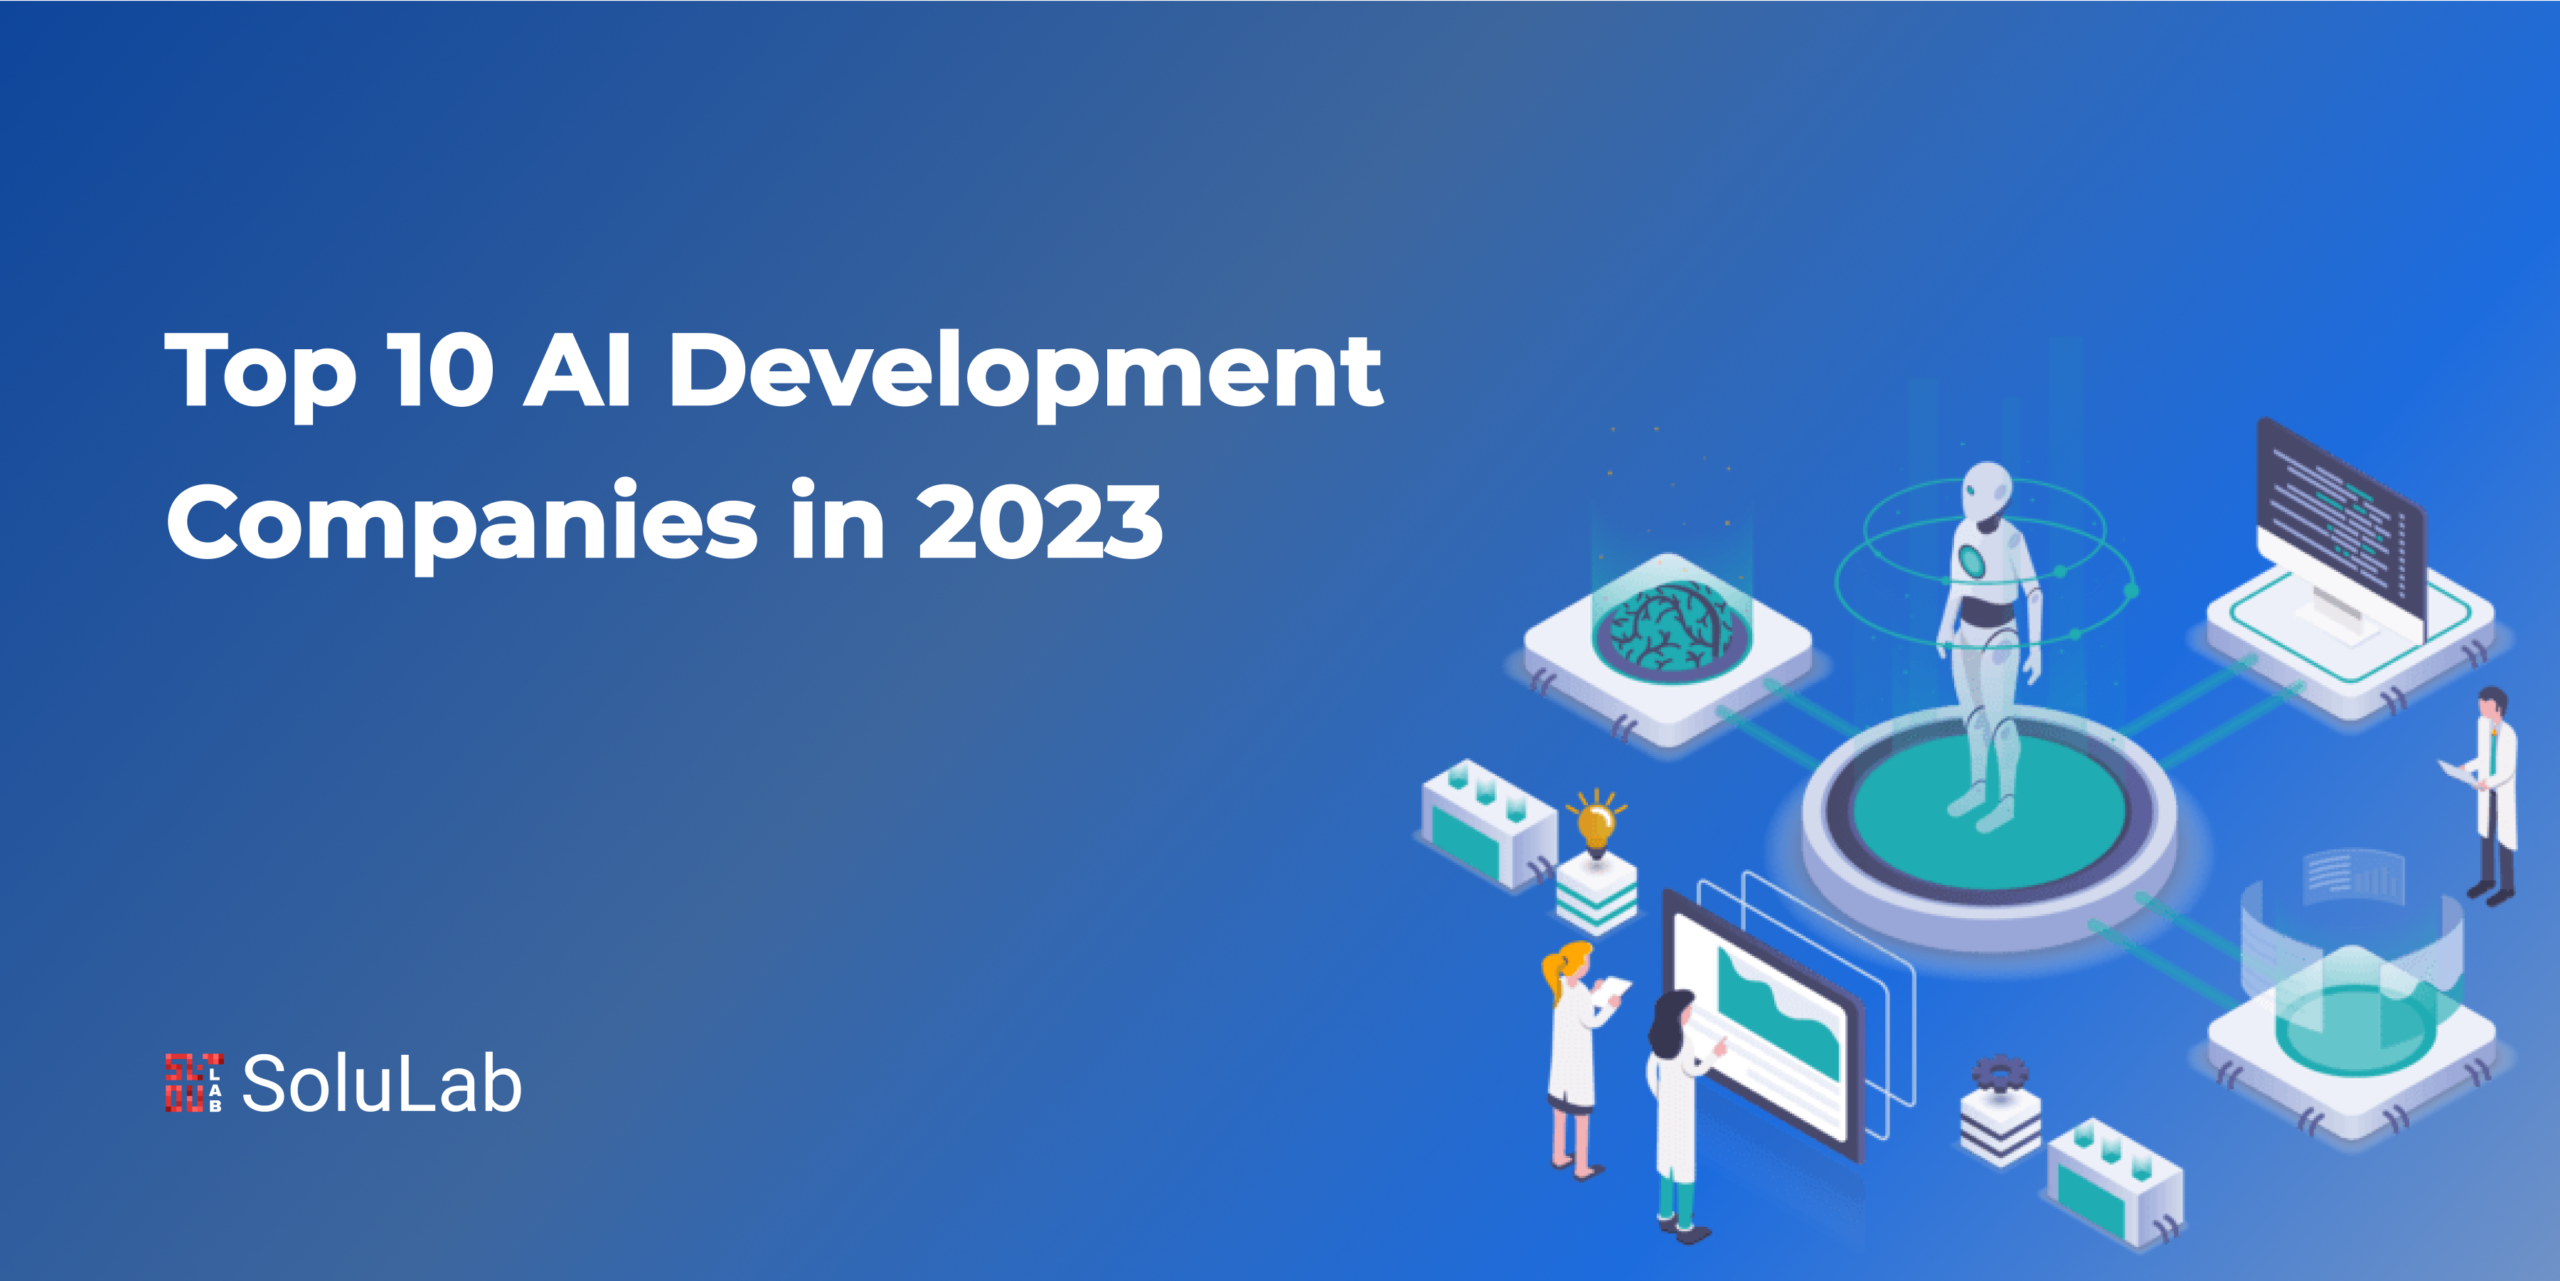 Top 10 AI Development Companies in 2023